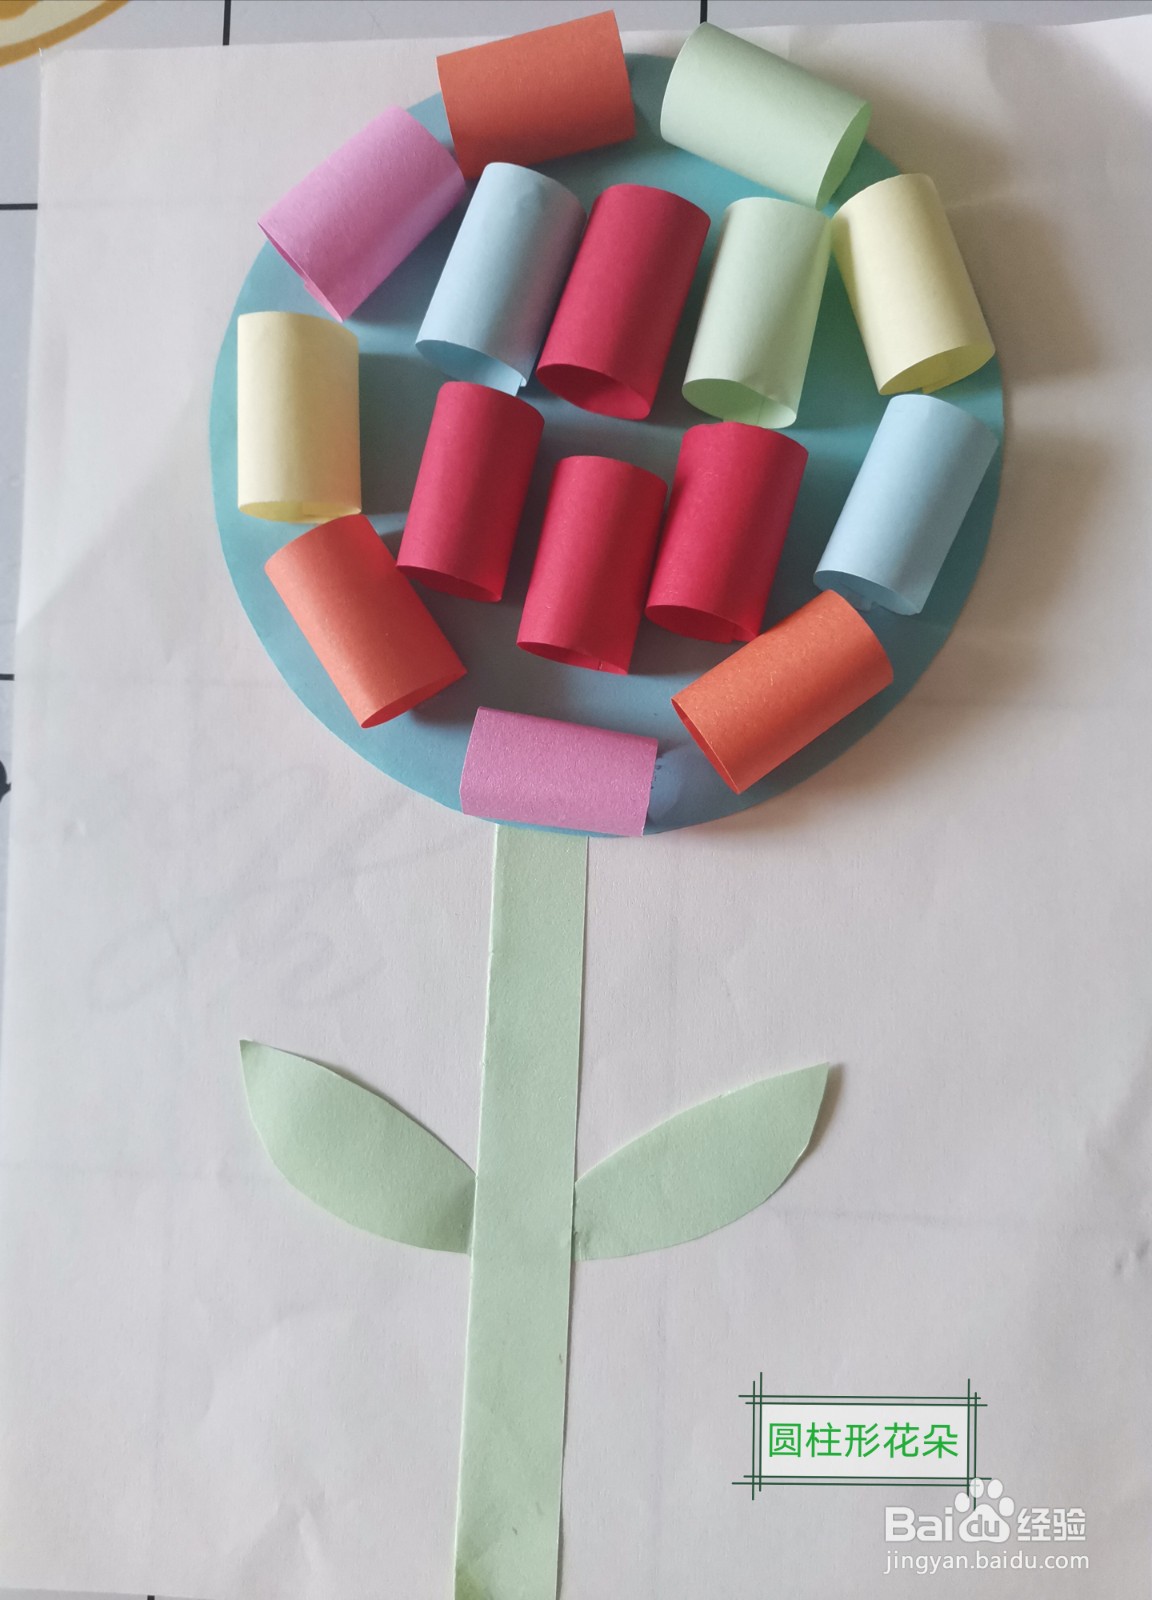 手工制作圆柱形花朵,一起来看看制作过程吧!